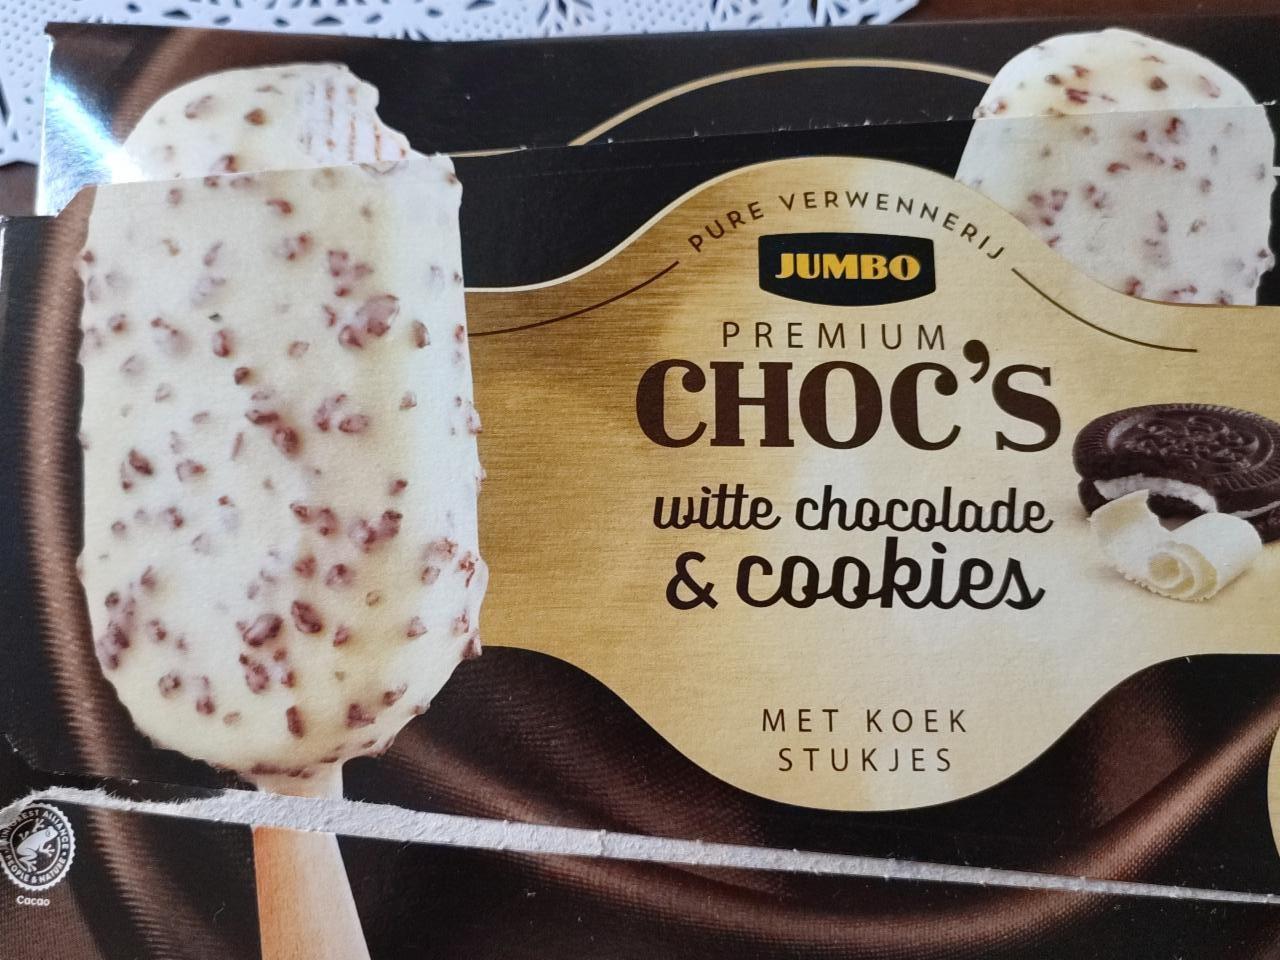 Képek - Premium Choc's White chocolate & cookies Jumbo